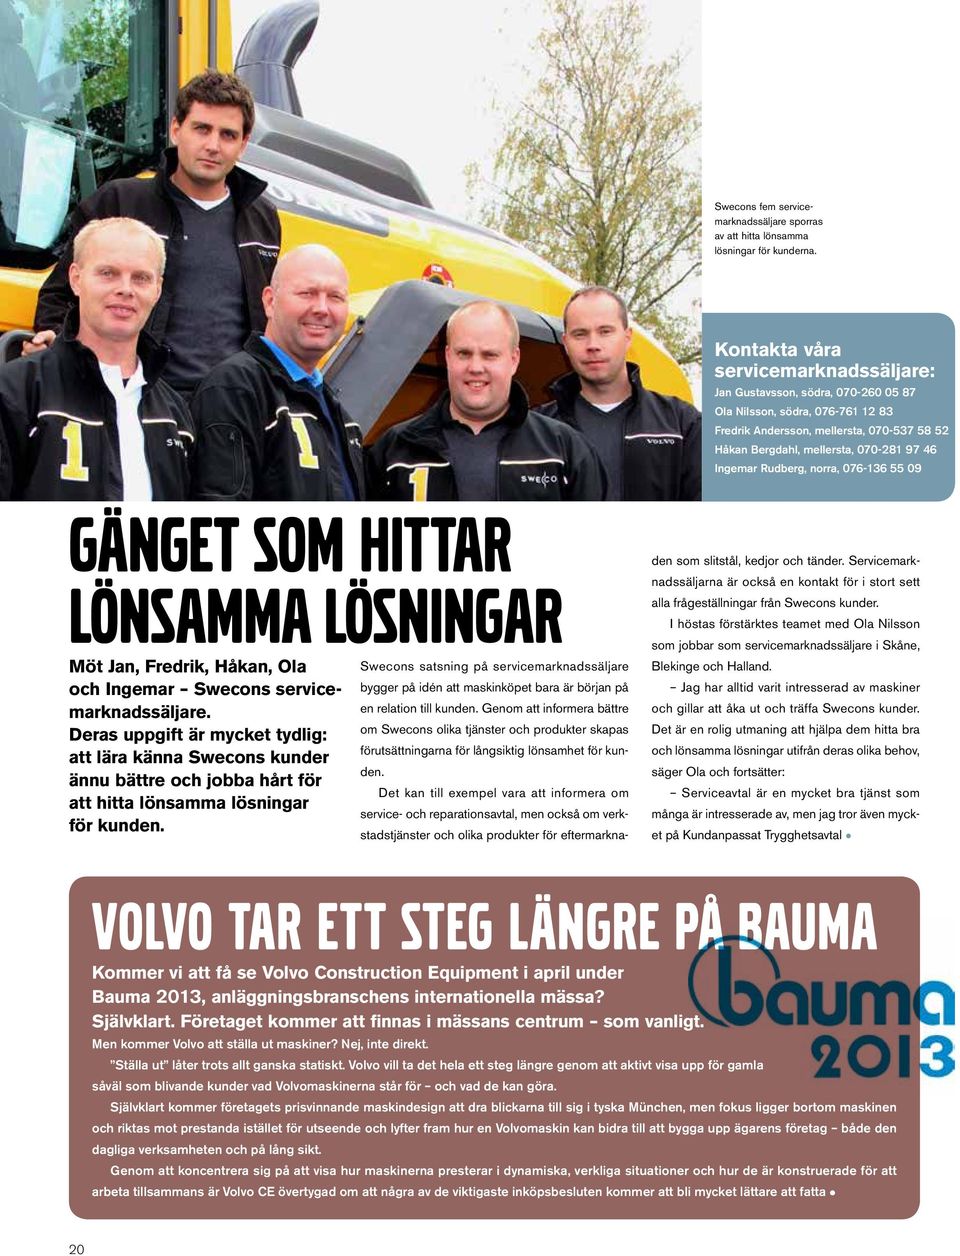 Ingemar Rudberg, norra, 076-136 55 09 Gänget som hittar lönsamma lösningar Möt Jan, Fredrik, Håkan, Ola och Ingemar Swecons servicemarknadssäljare.